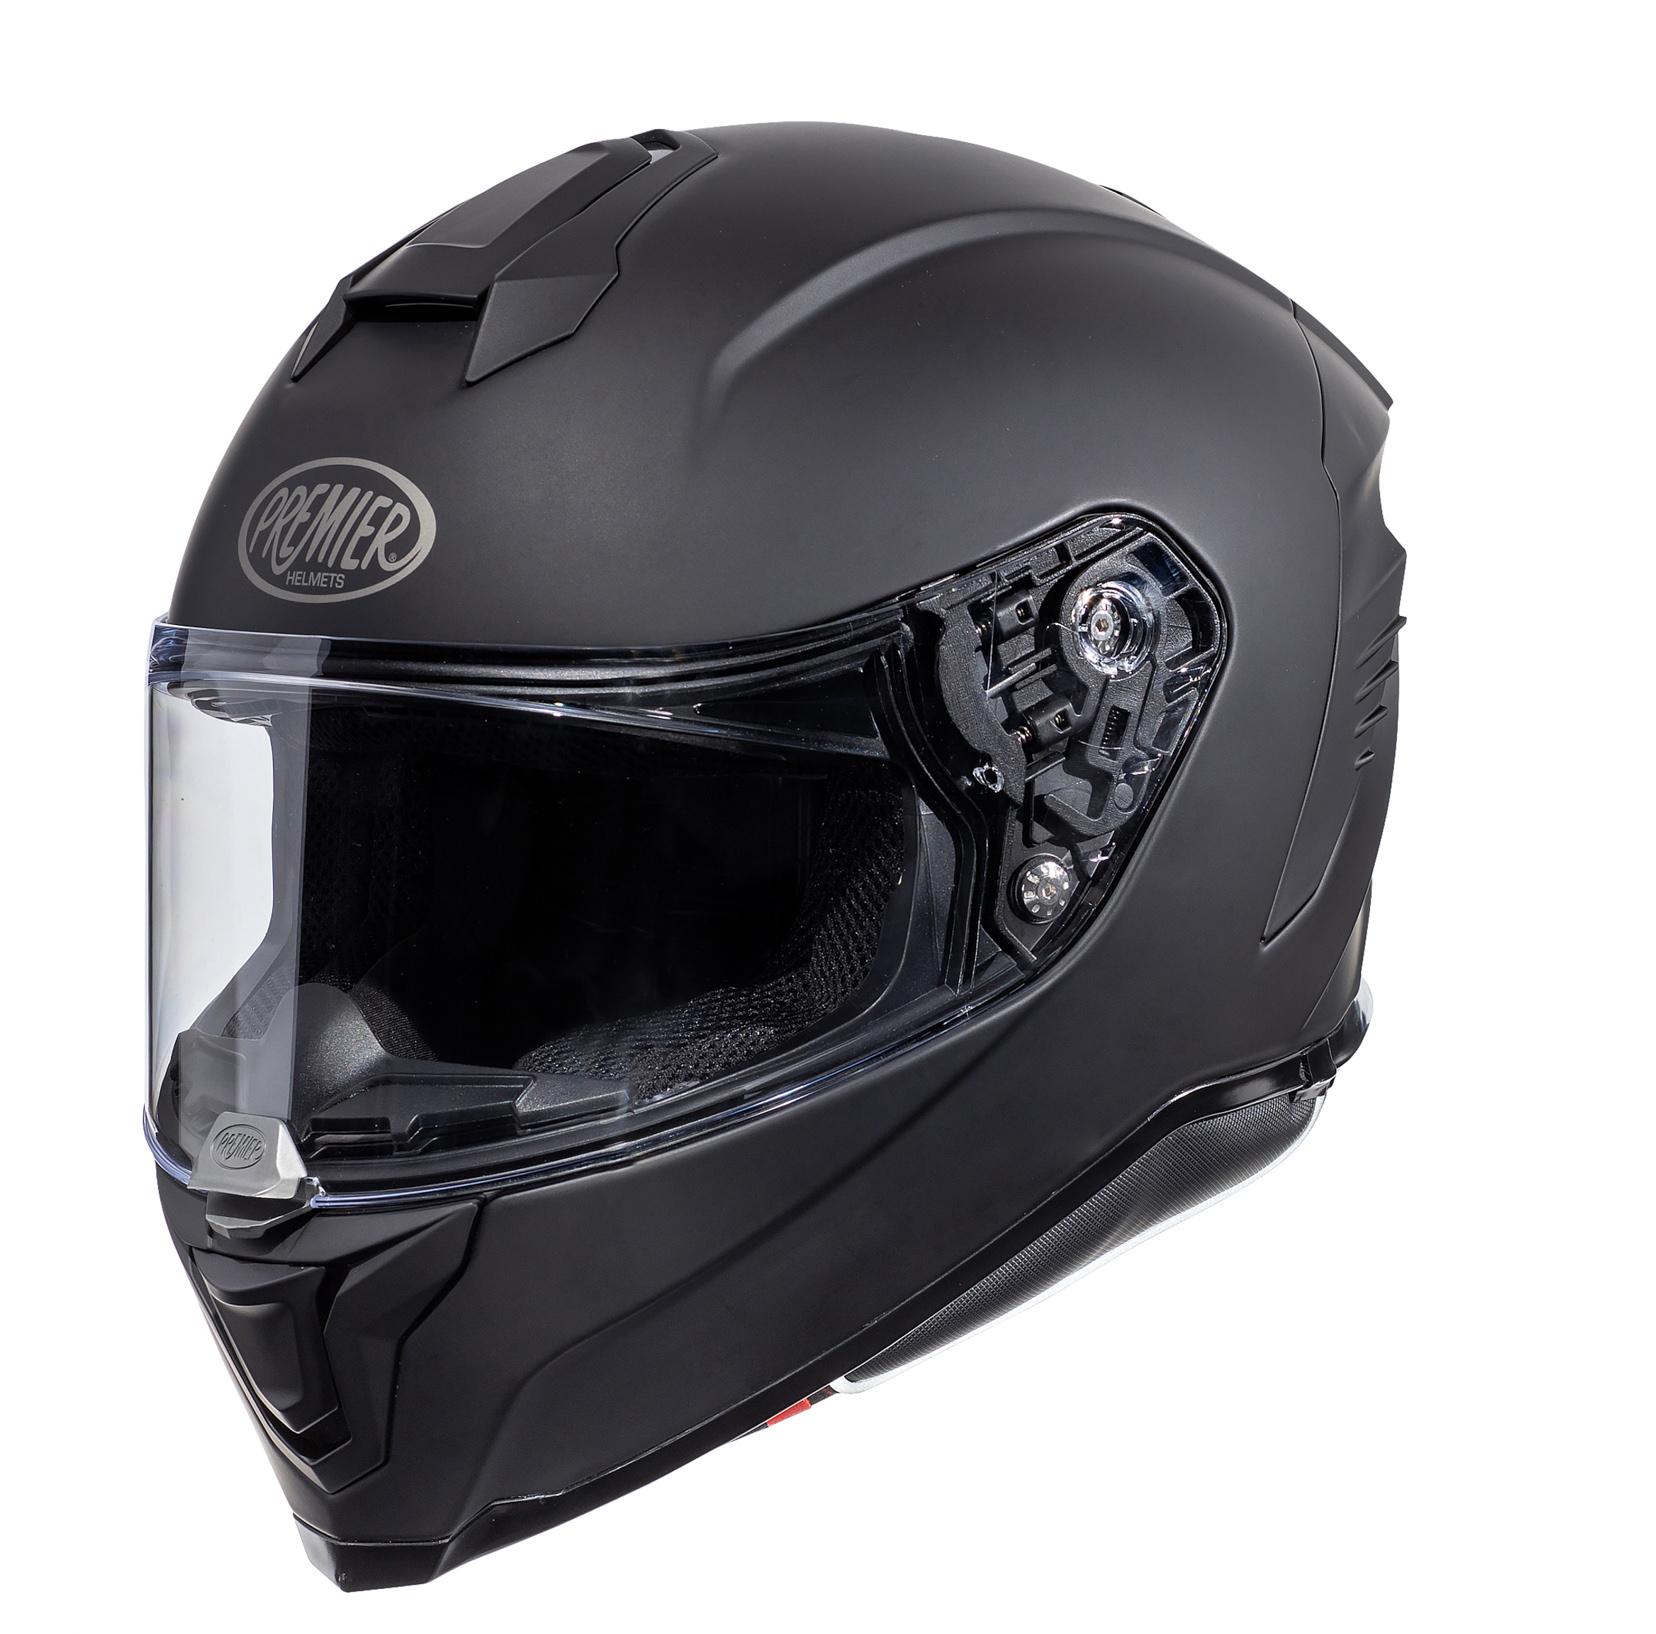 Premier Hyper Full Face Motorcycle Helmet - Matt Black, S